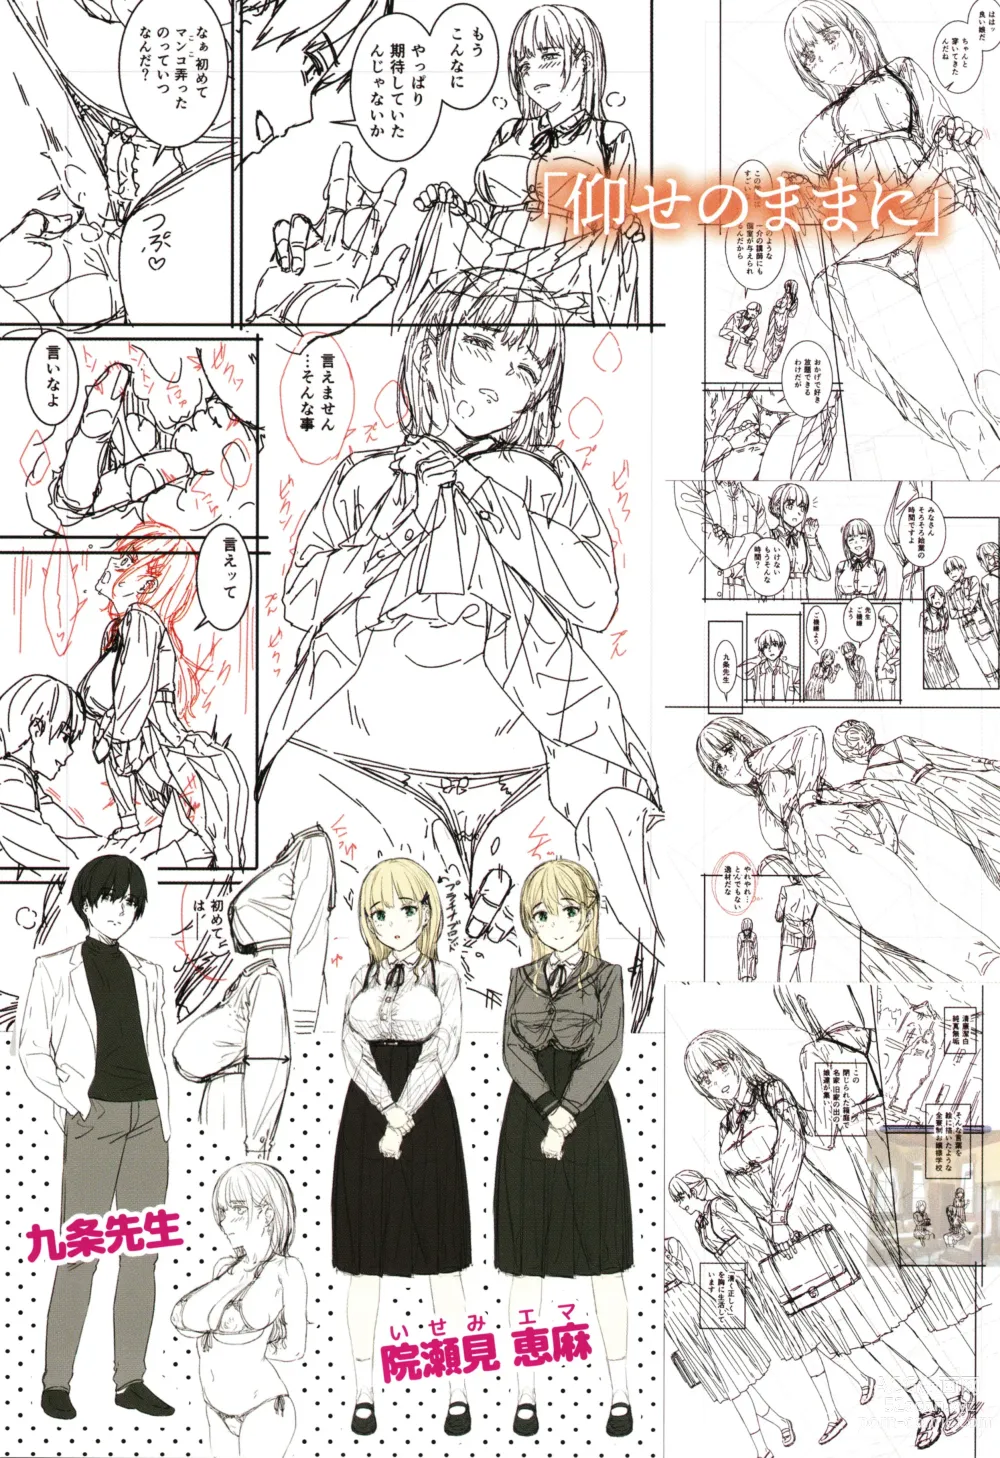 Page 180 of manga Hoshigarikko - Excited Girls Play + Toranoana Gentei Tokuten COMICS ROUGH&CHARACTAR NOTES